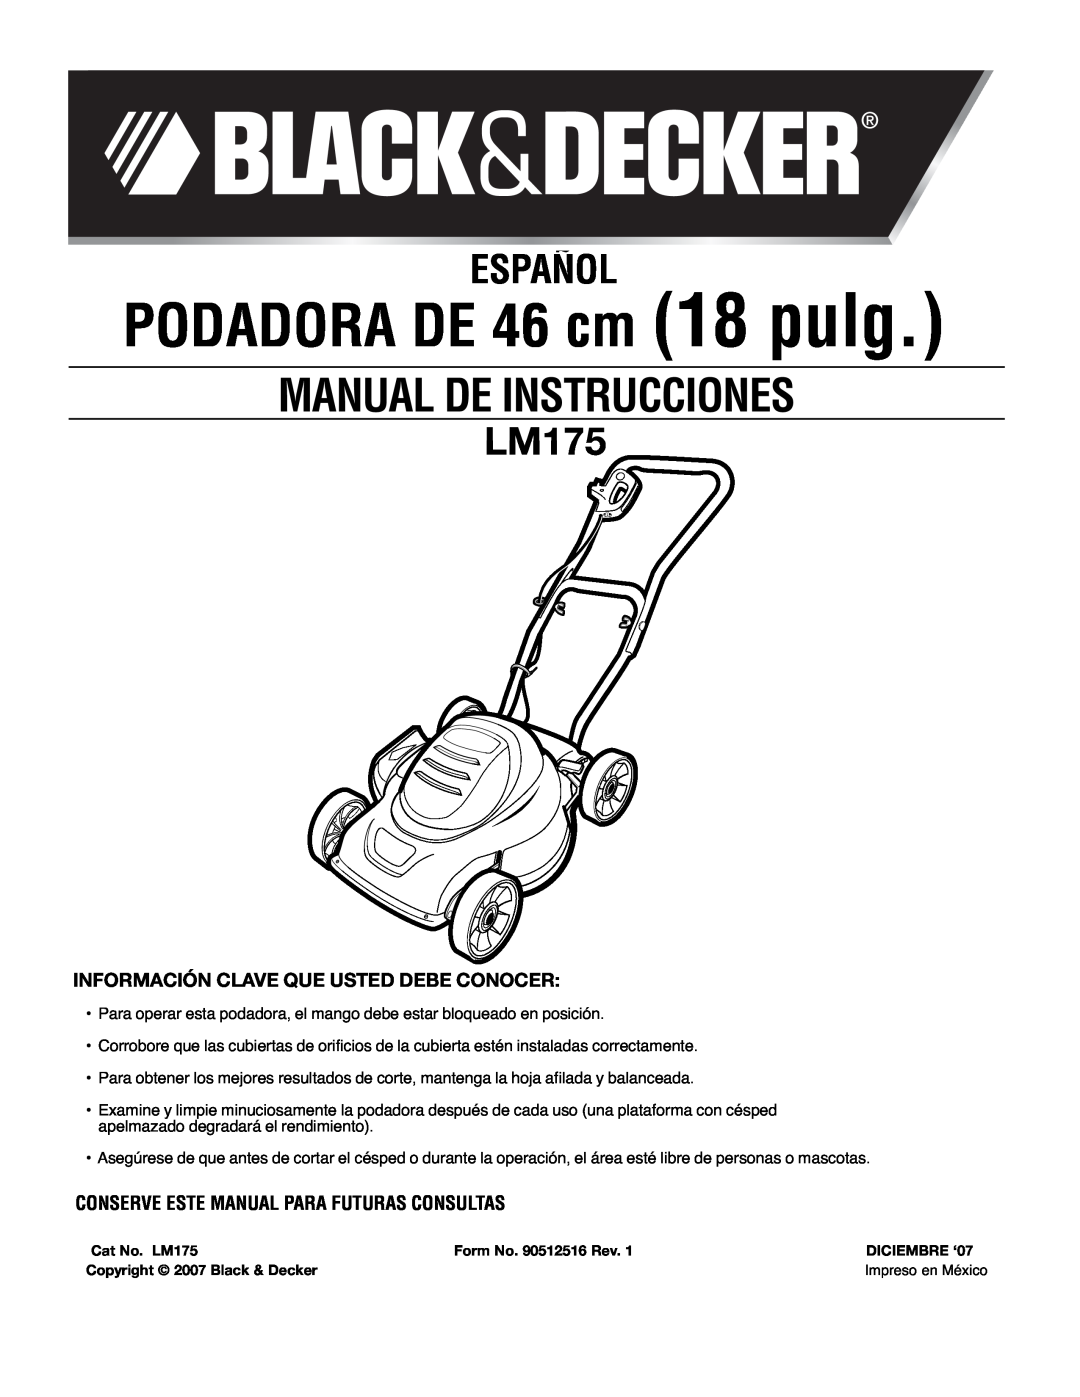 Black & Decker LM175 PODADORA DE 46 cm 18 pulg, Español, Información Clave Que Usted Debe Conocer, Manual De Instrucciones 